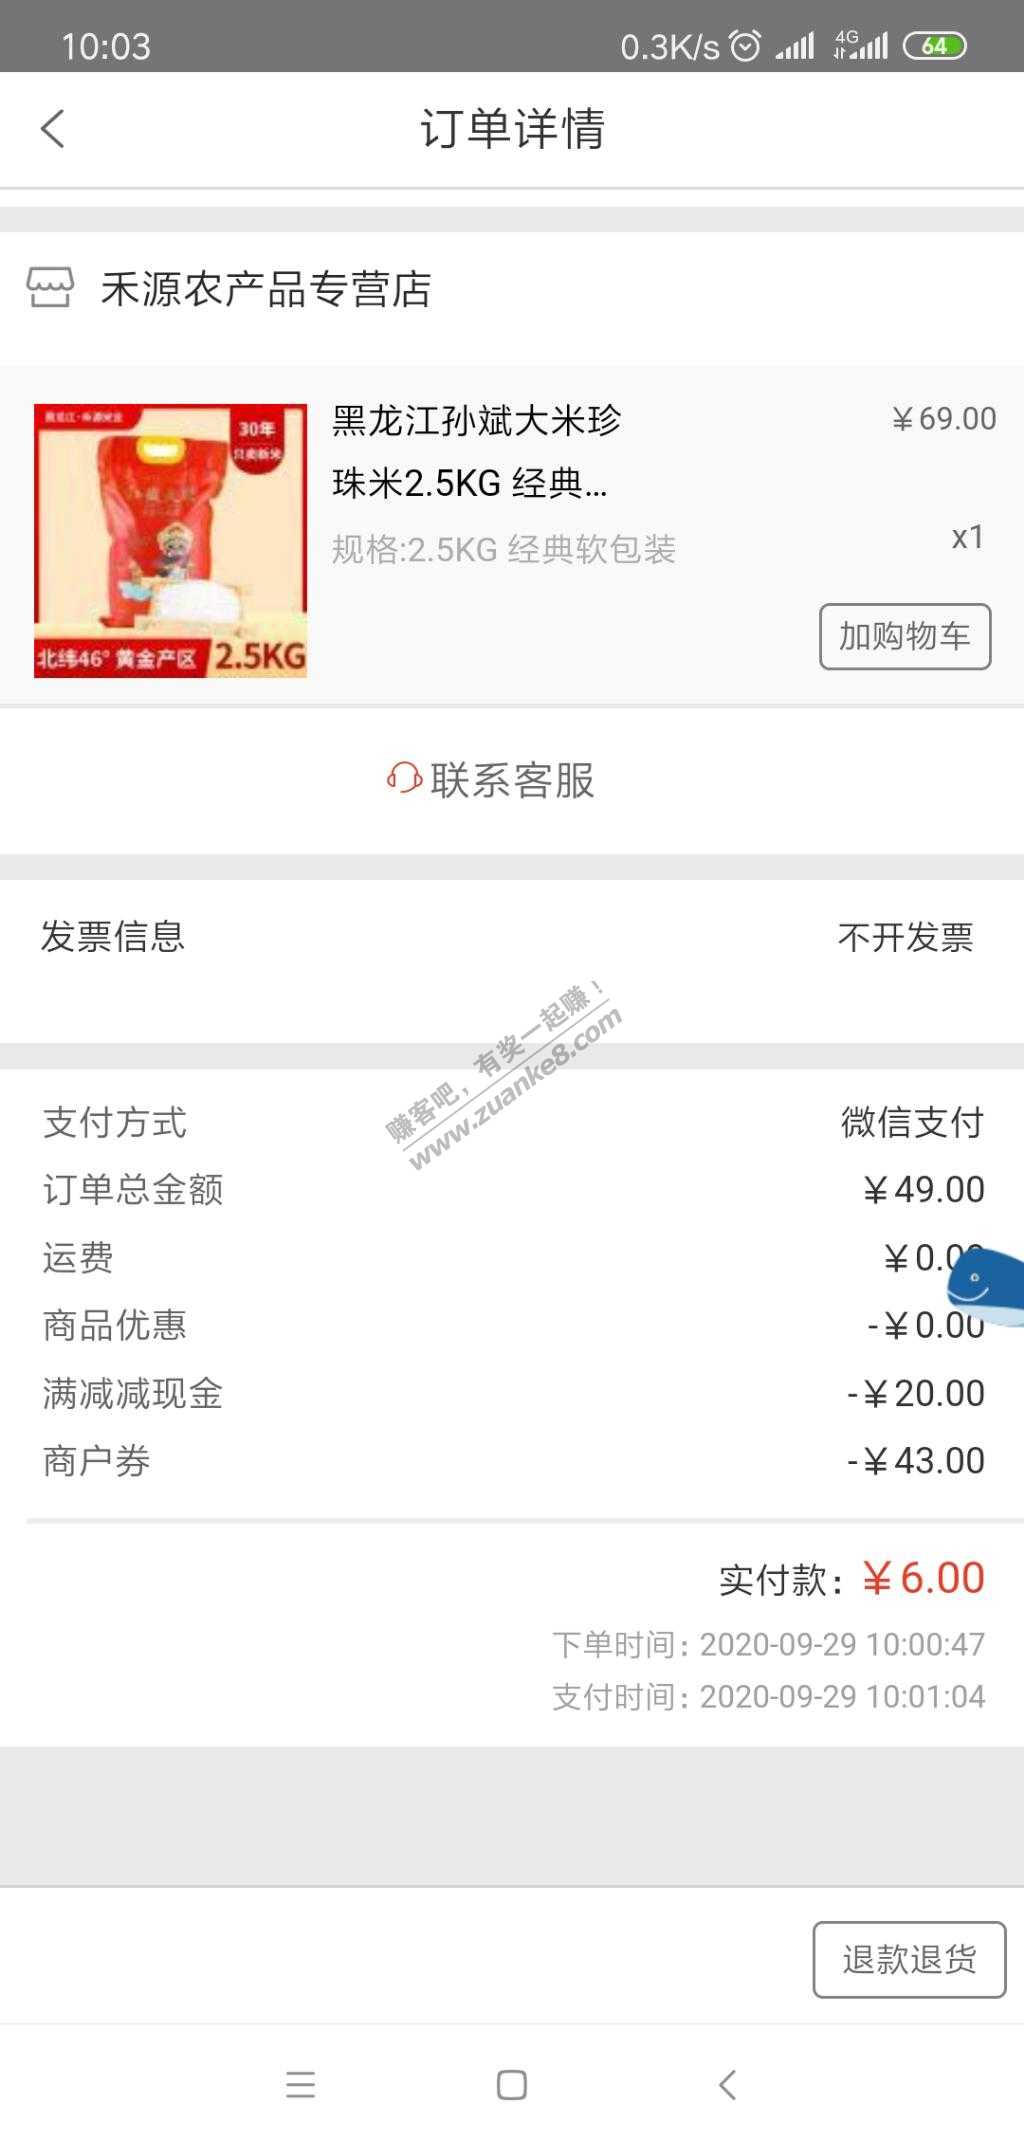 融e购大米6元5斤-惠小助(52huixz.com)